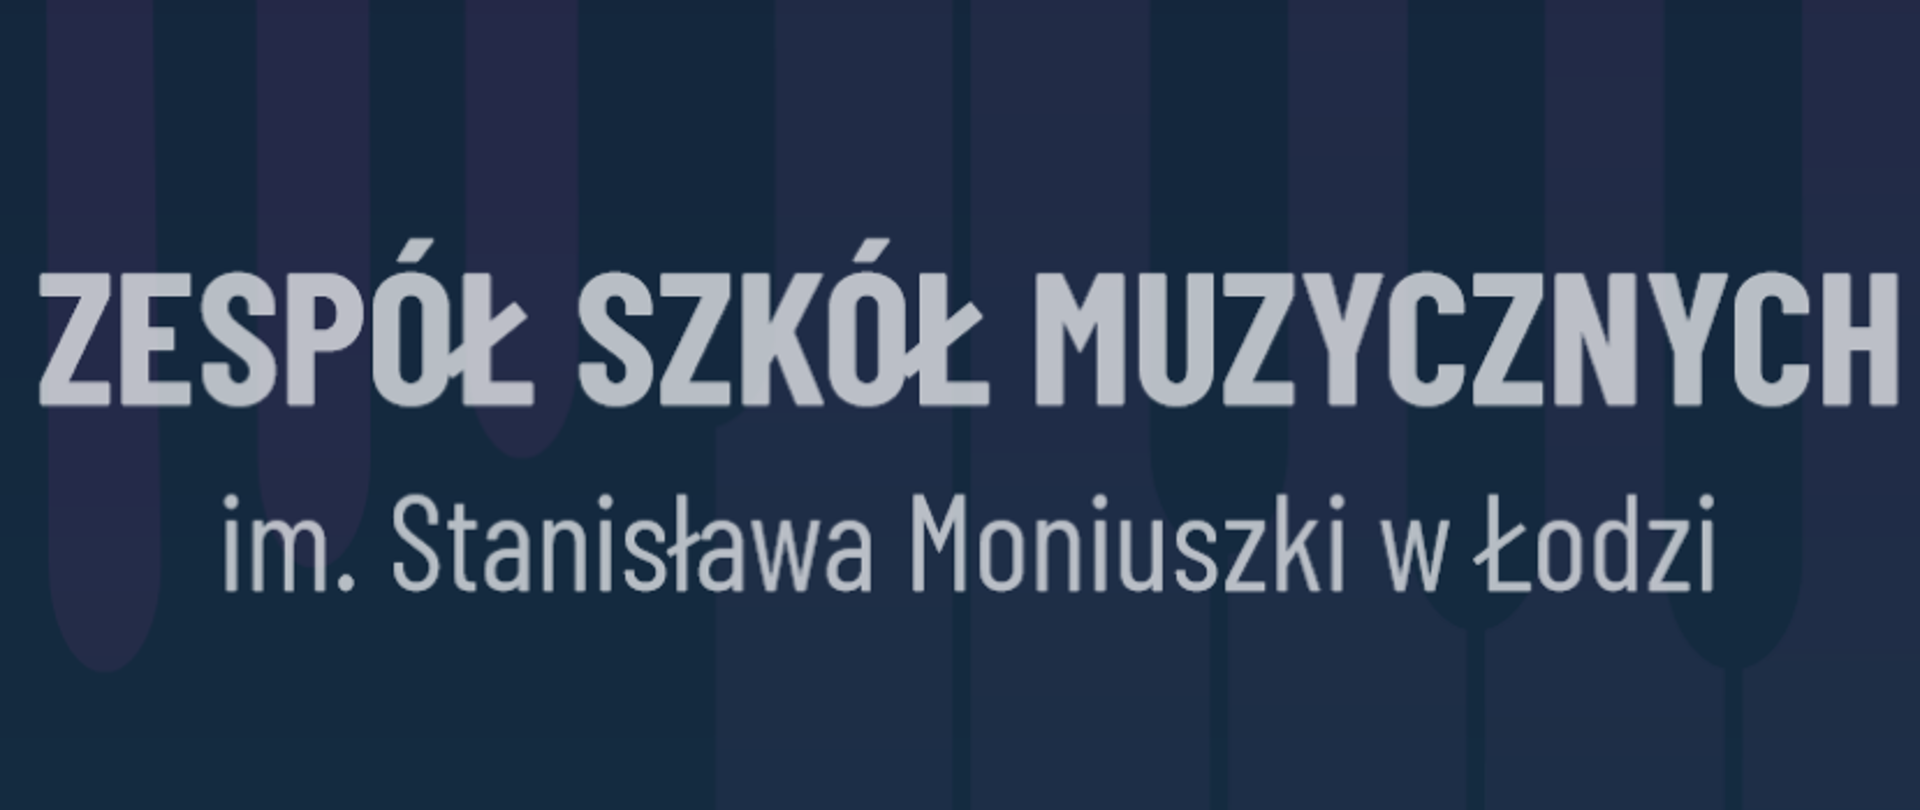 ZESPÓŁ SZKÓŁ MUZYCZNYCH im. Stanisława Moniuszki w Łodzi, napis na niebieskim tle